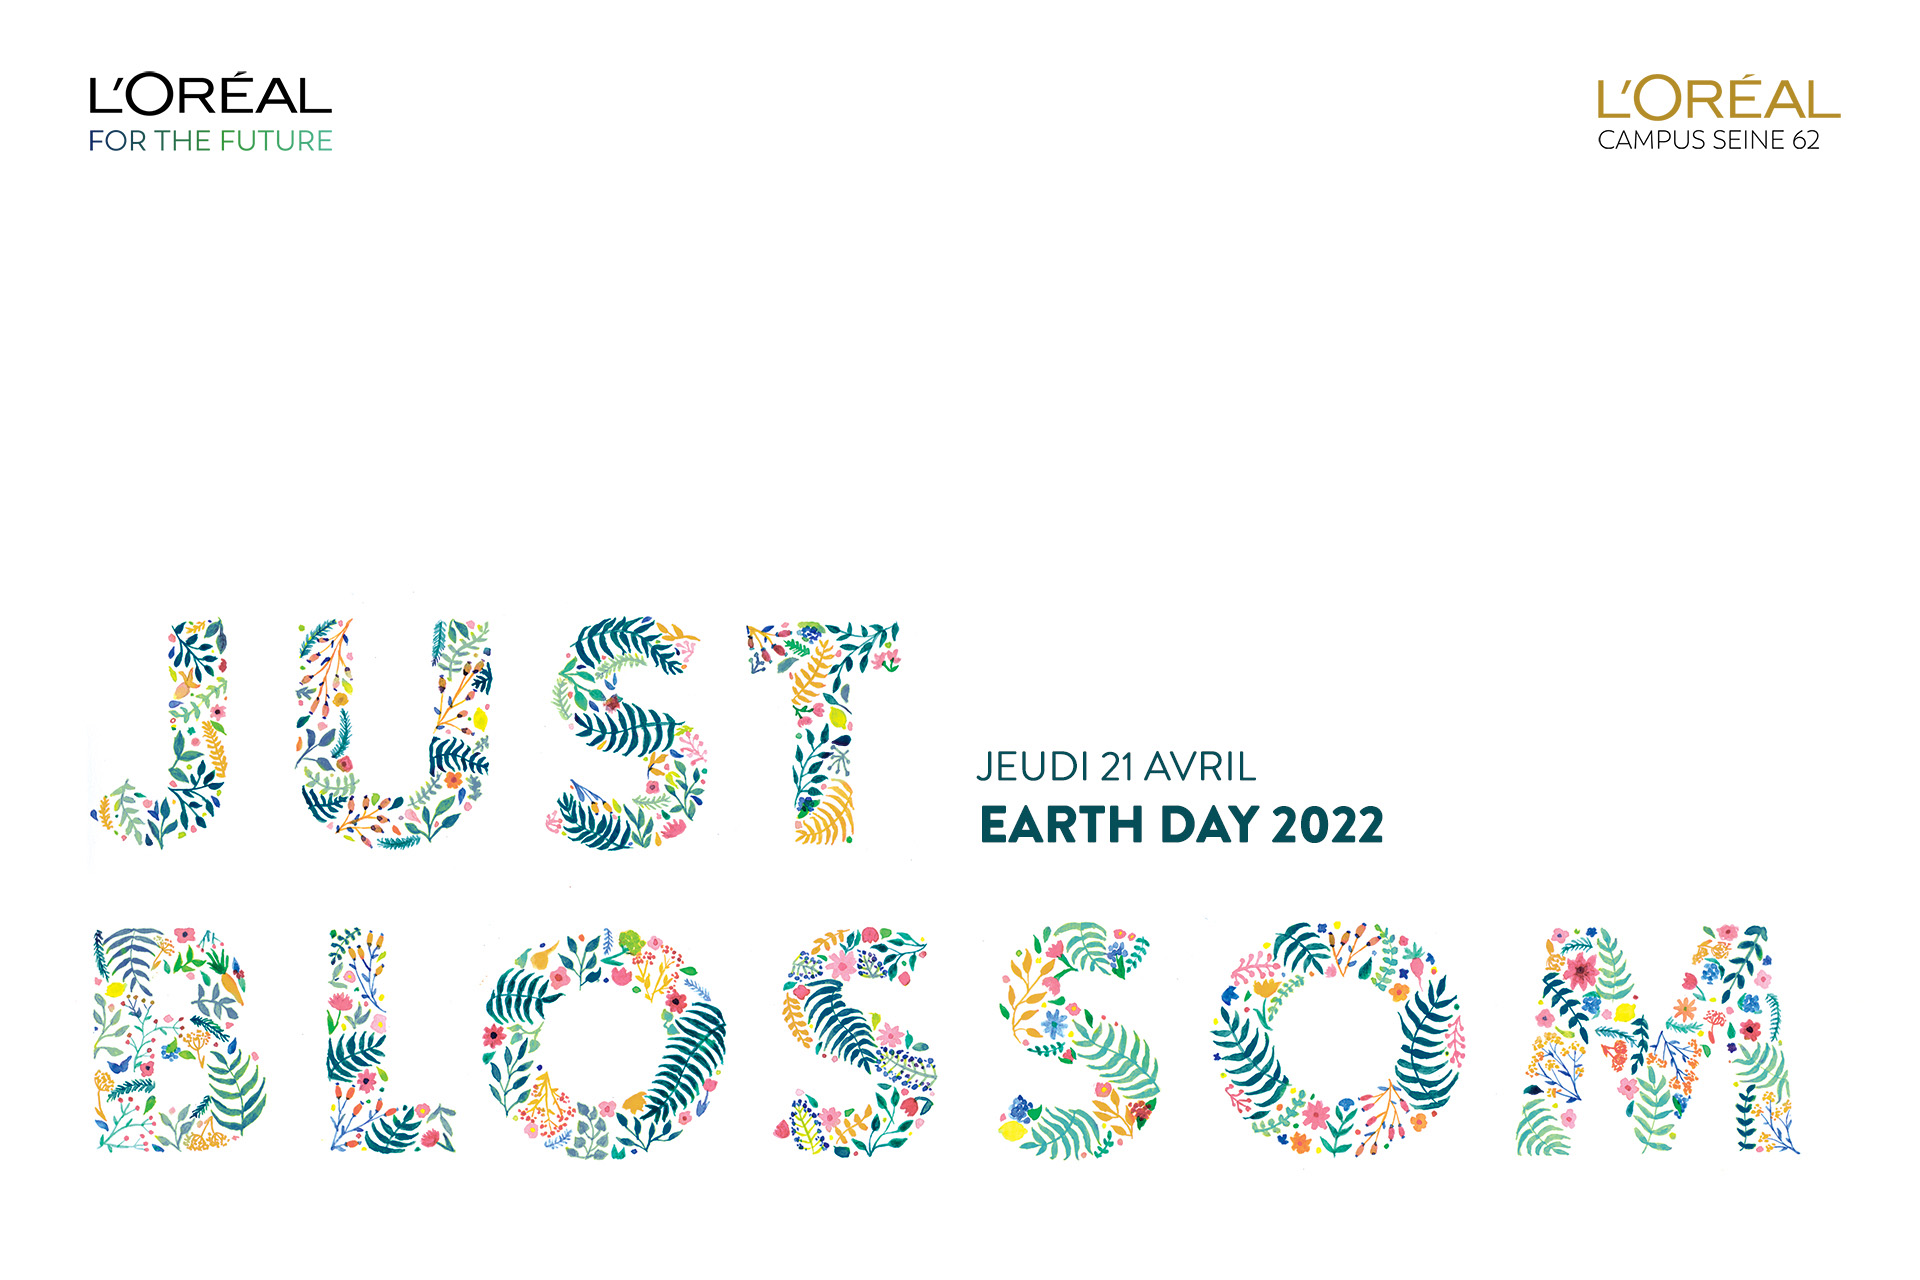 Visuel événement Earth Day l'Oréal 2022